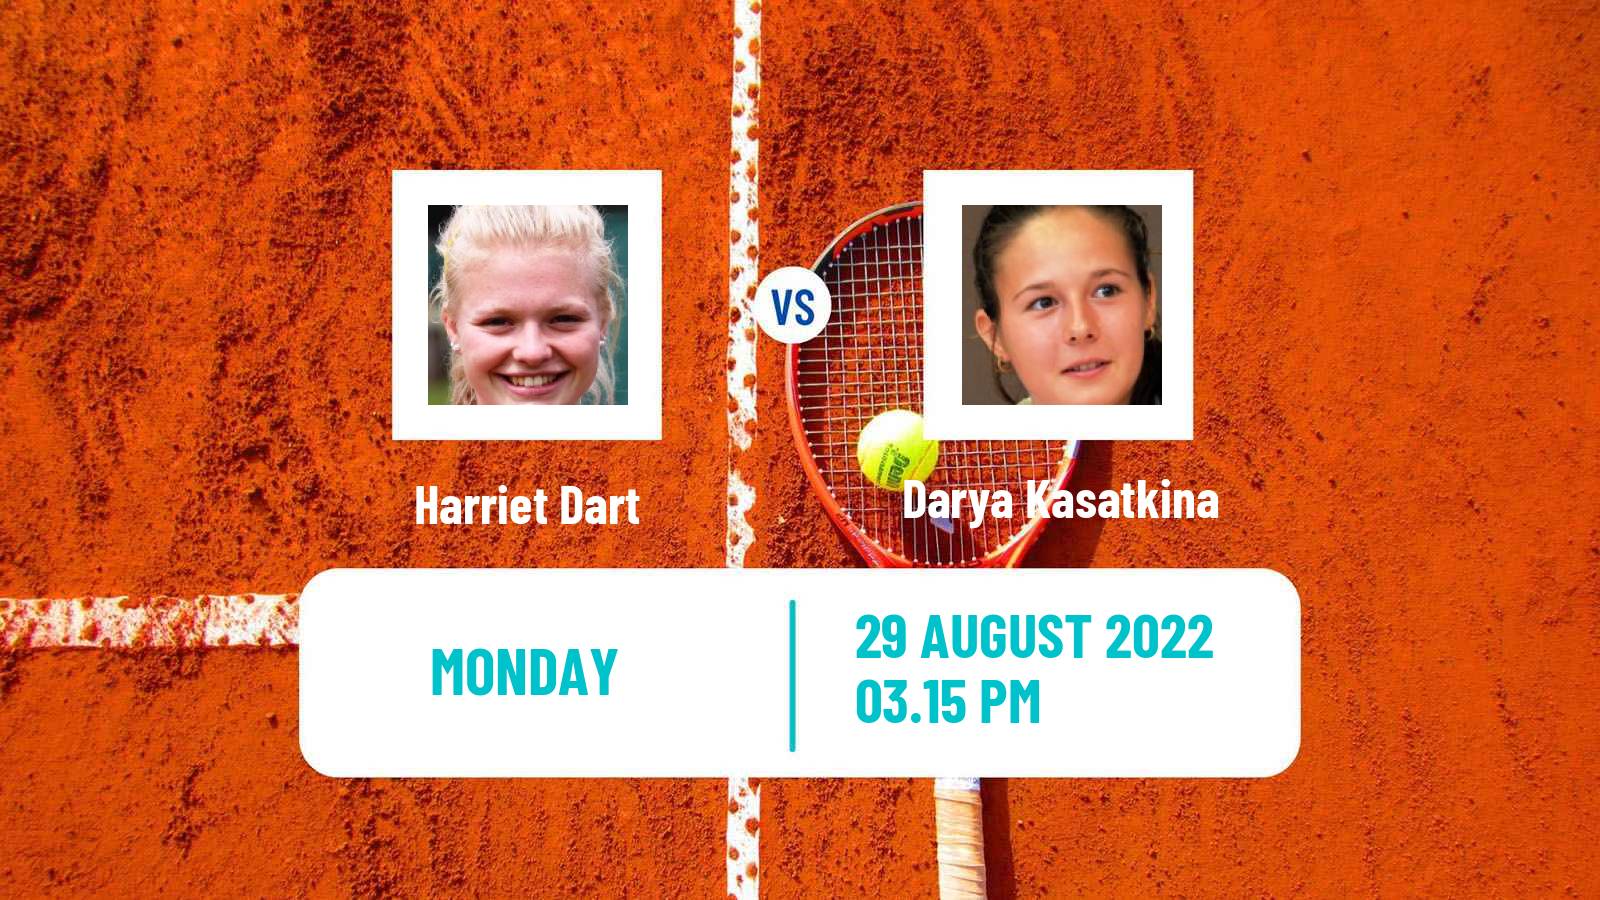 Tennis WTA US Open Harriet Dart - Darya Kasatkina